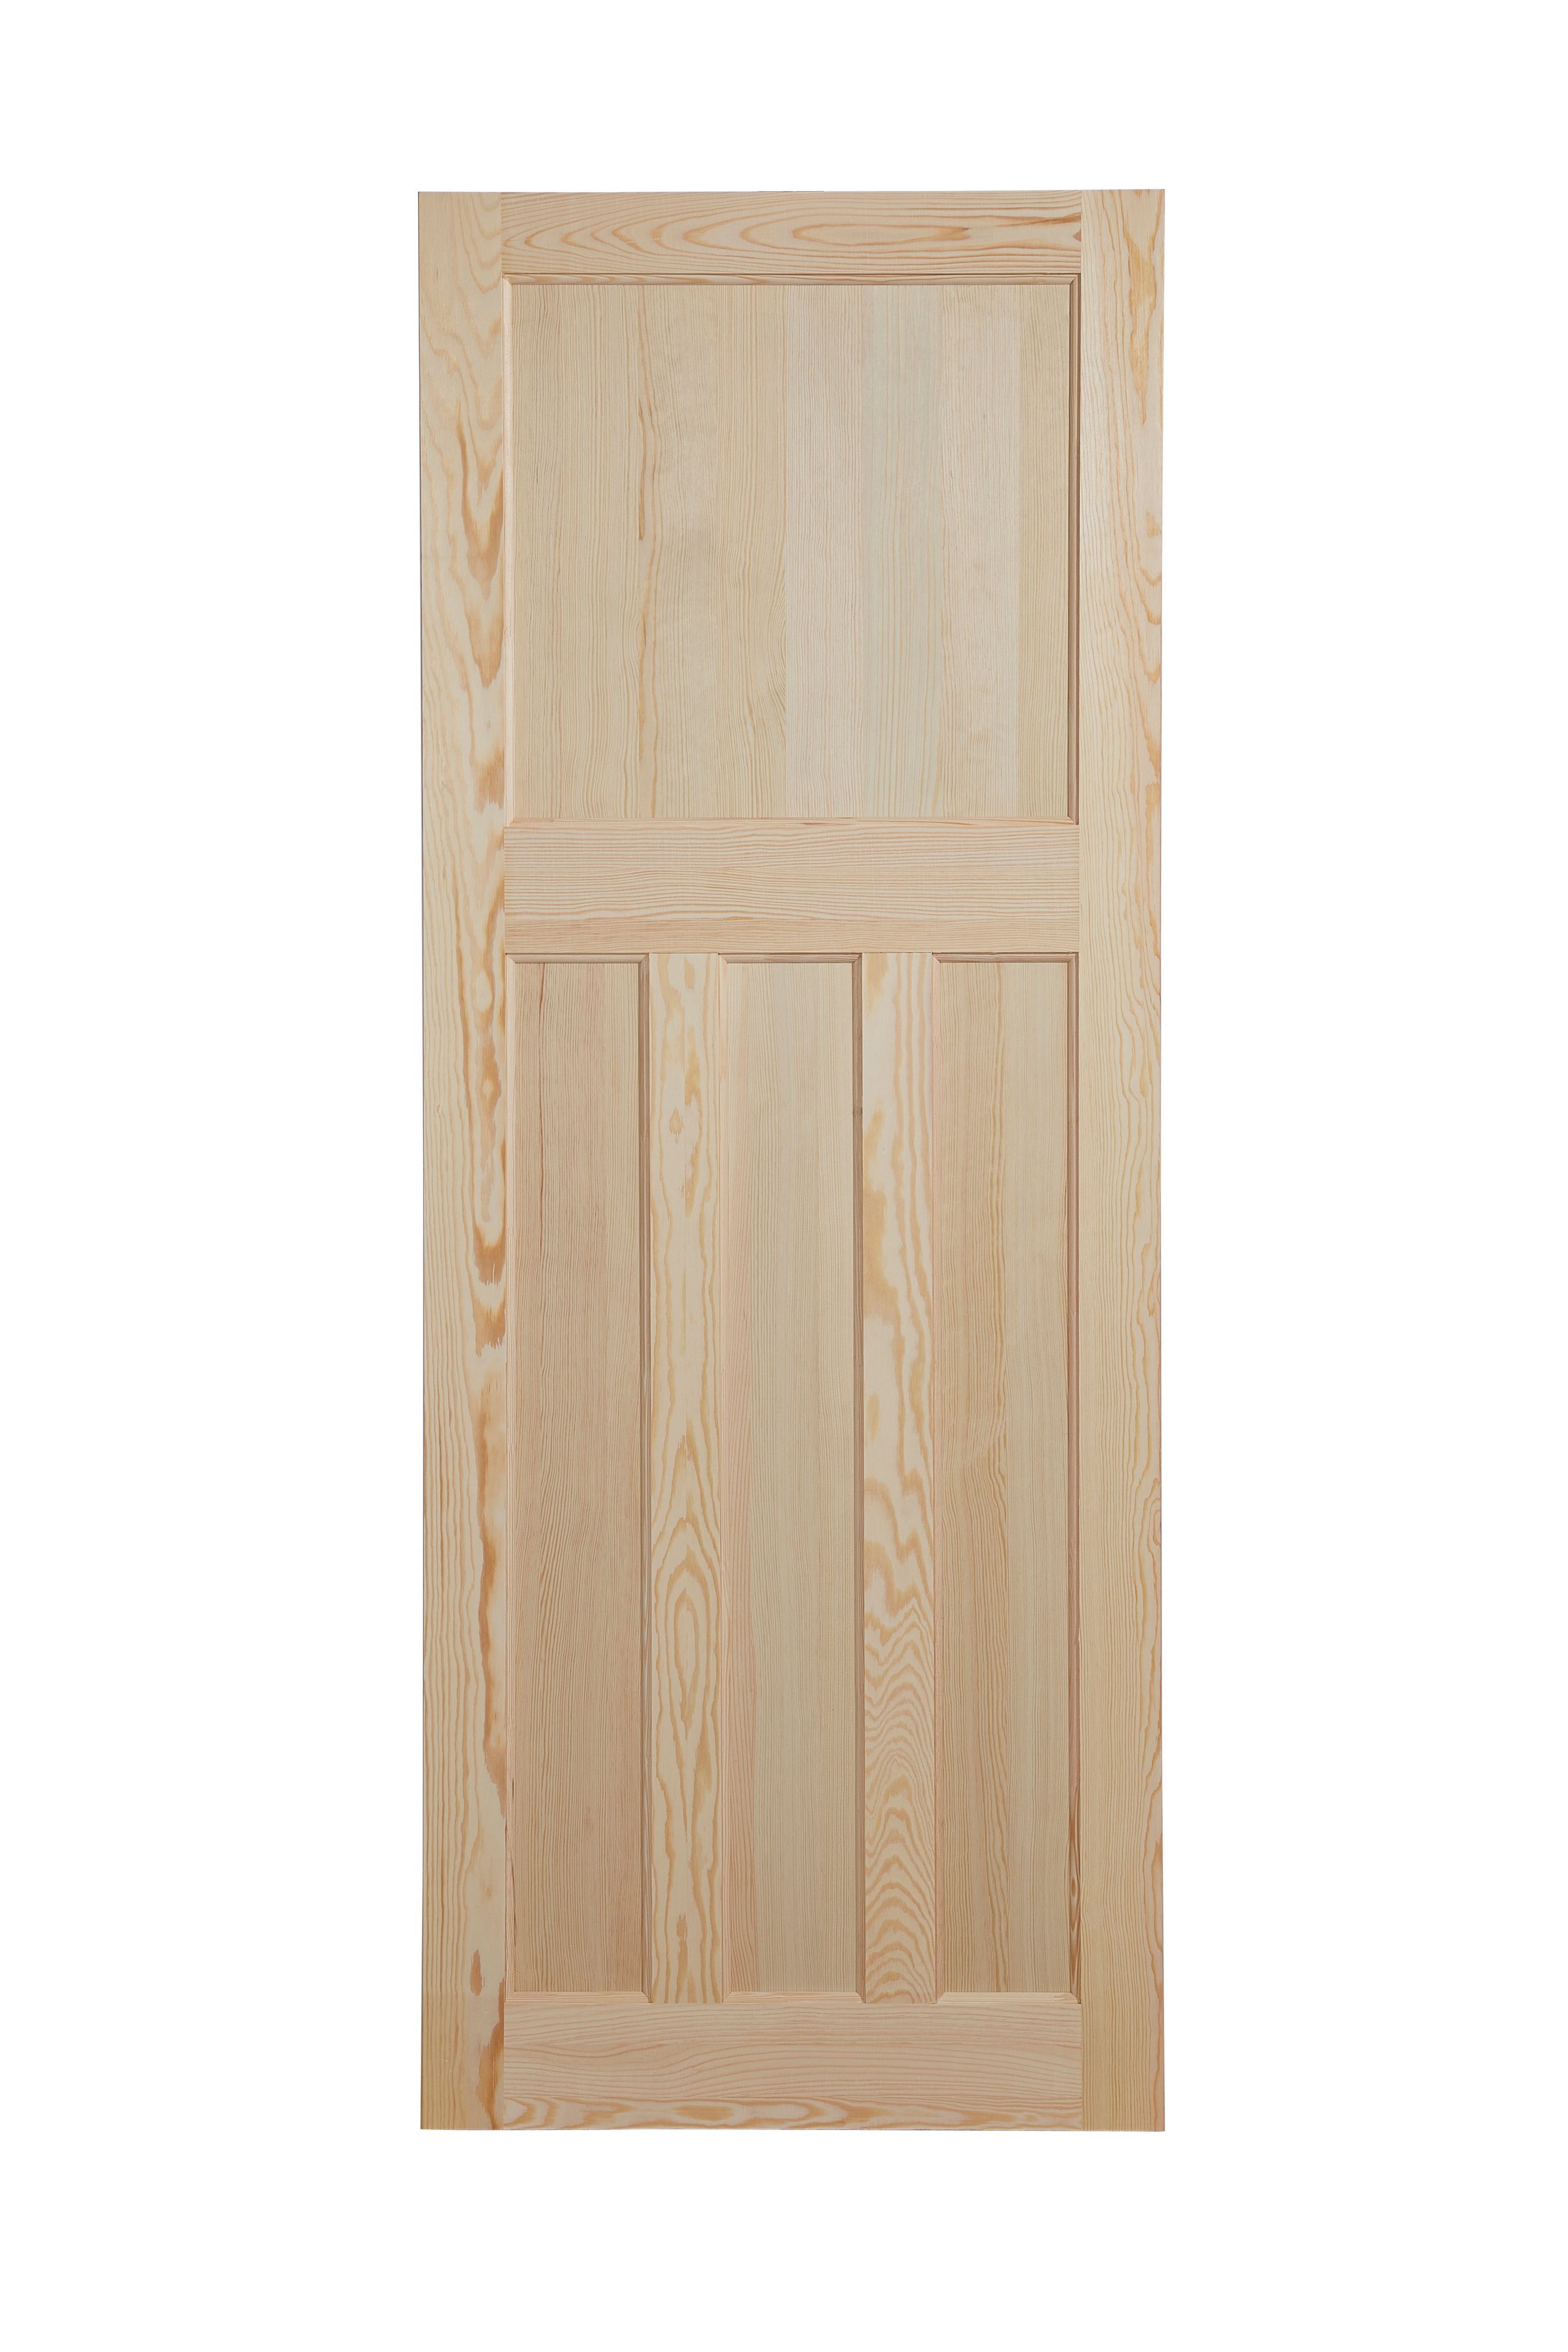 Geom 4 panel Unglazed Victorian Pine veneer Internal Clear pine Door, (H)1981mm (W)610mm (T)35mm